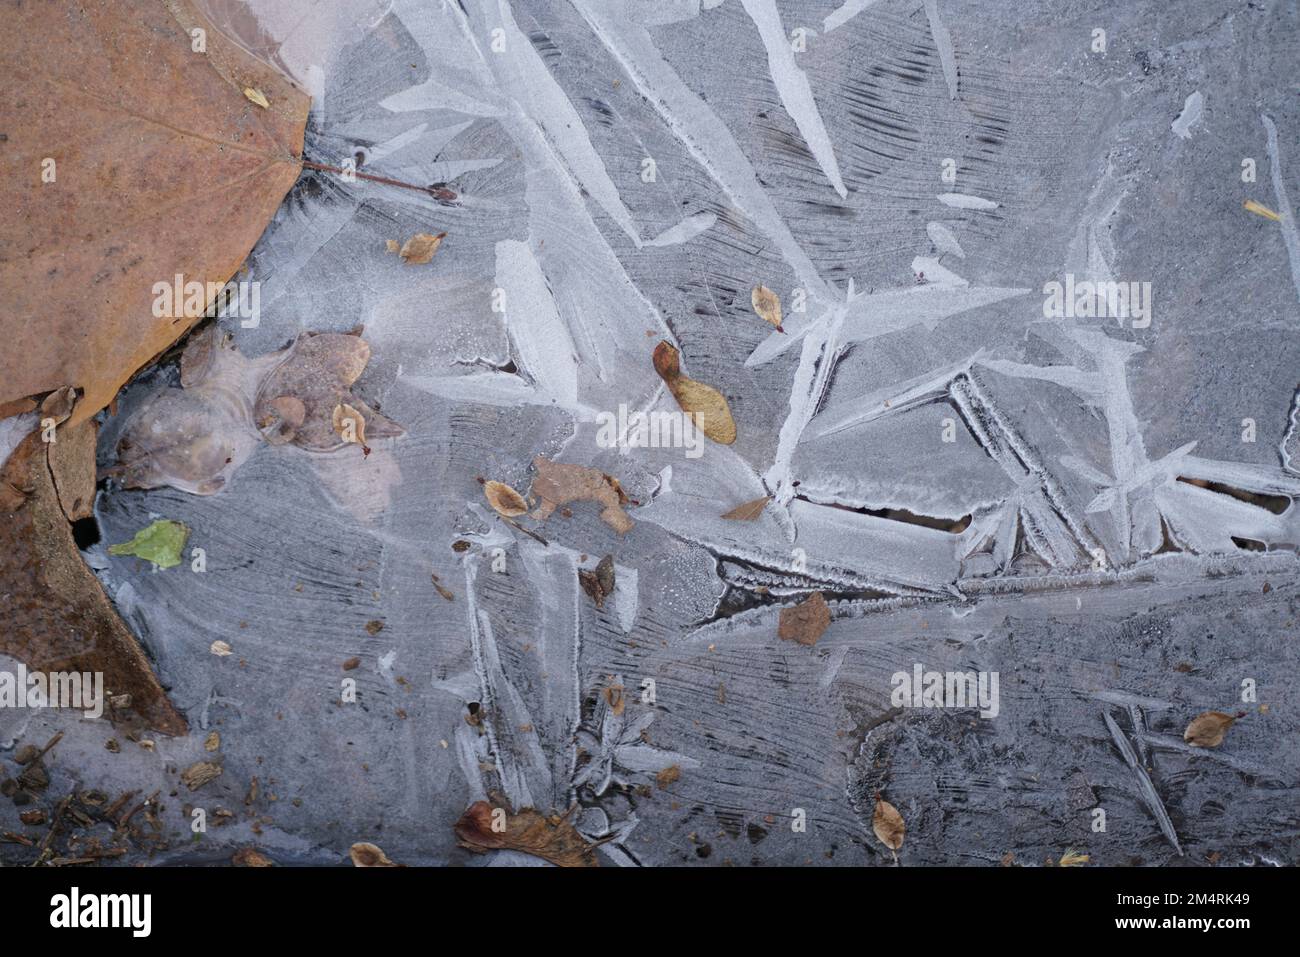 A closeup shot of transparent ice shards Stock Photo